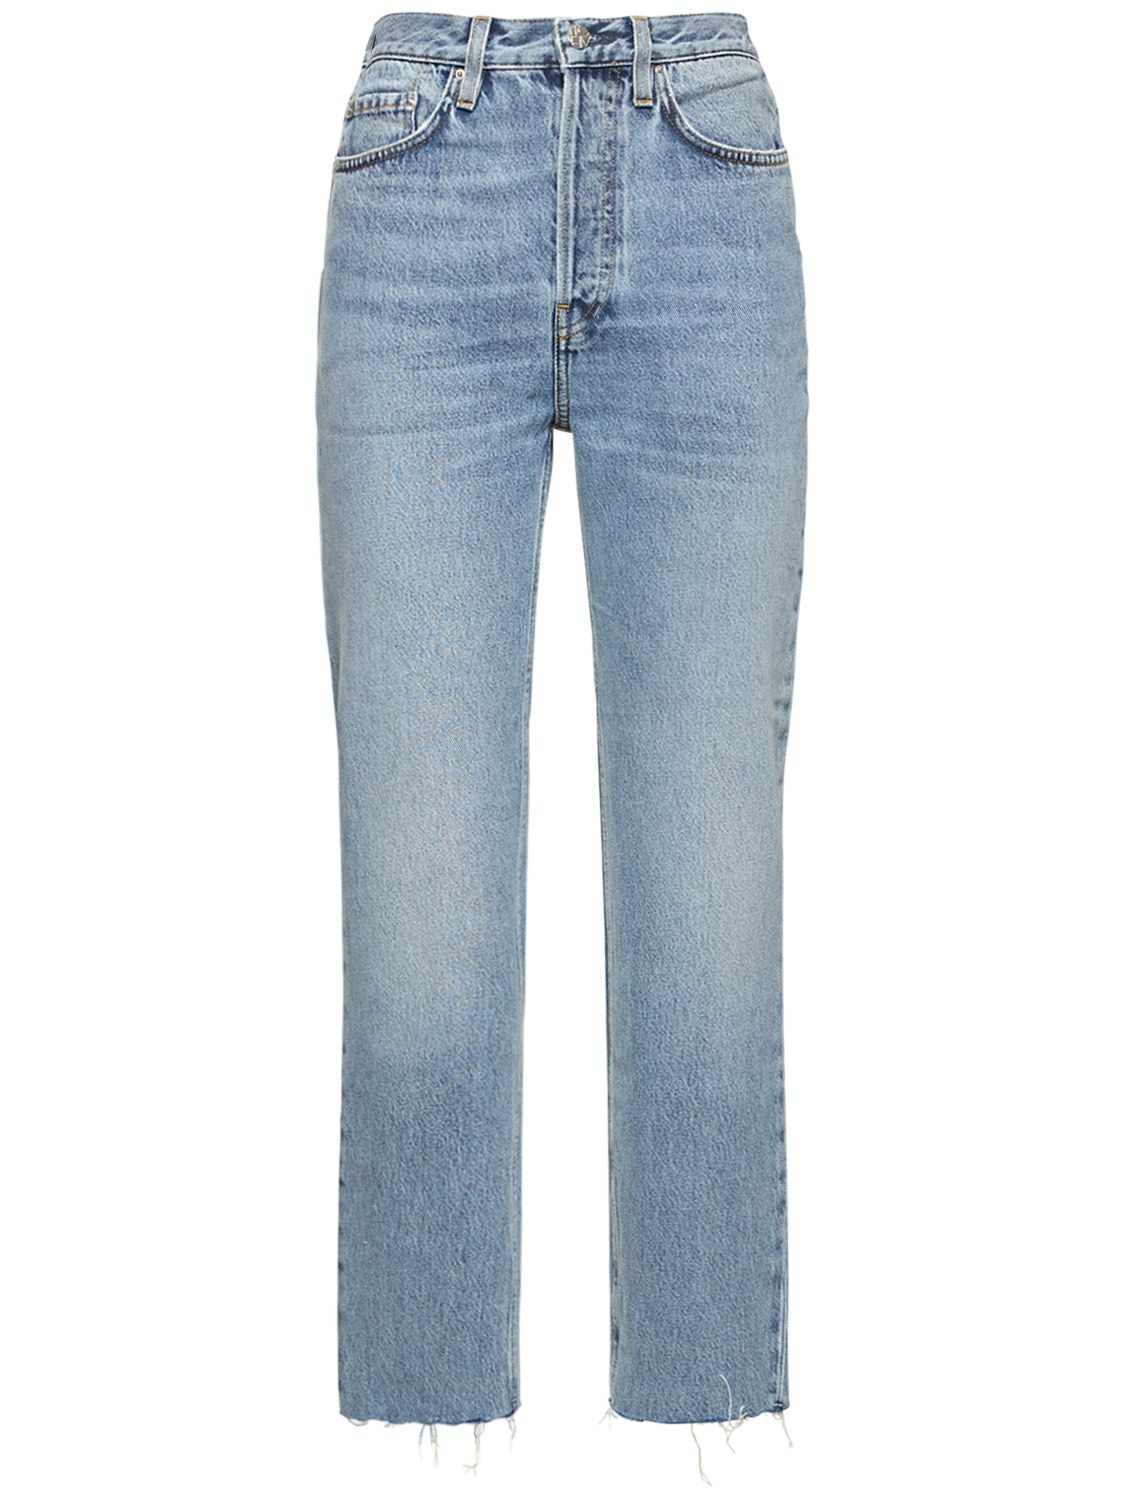 Totême Organic Cotton Denim Classic Cut Jeans In Blue